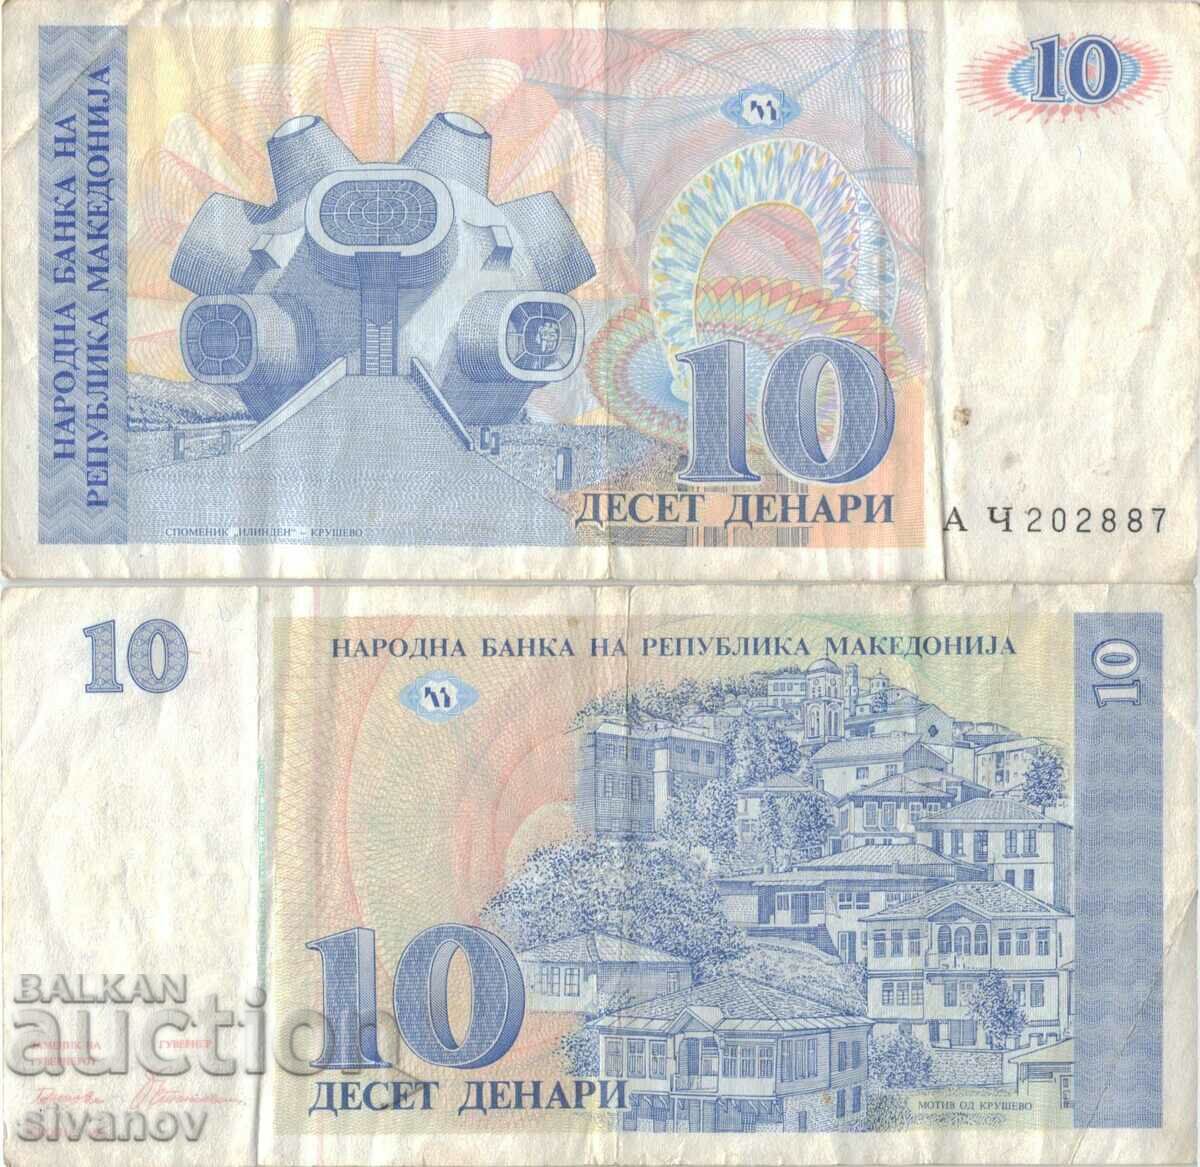 Macedonia 10 denari 1993 bancnota #5213